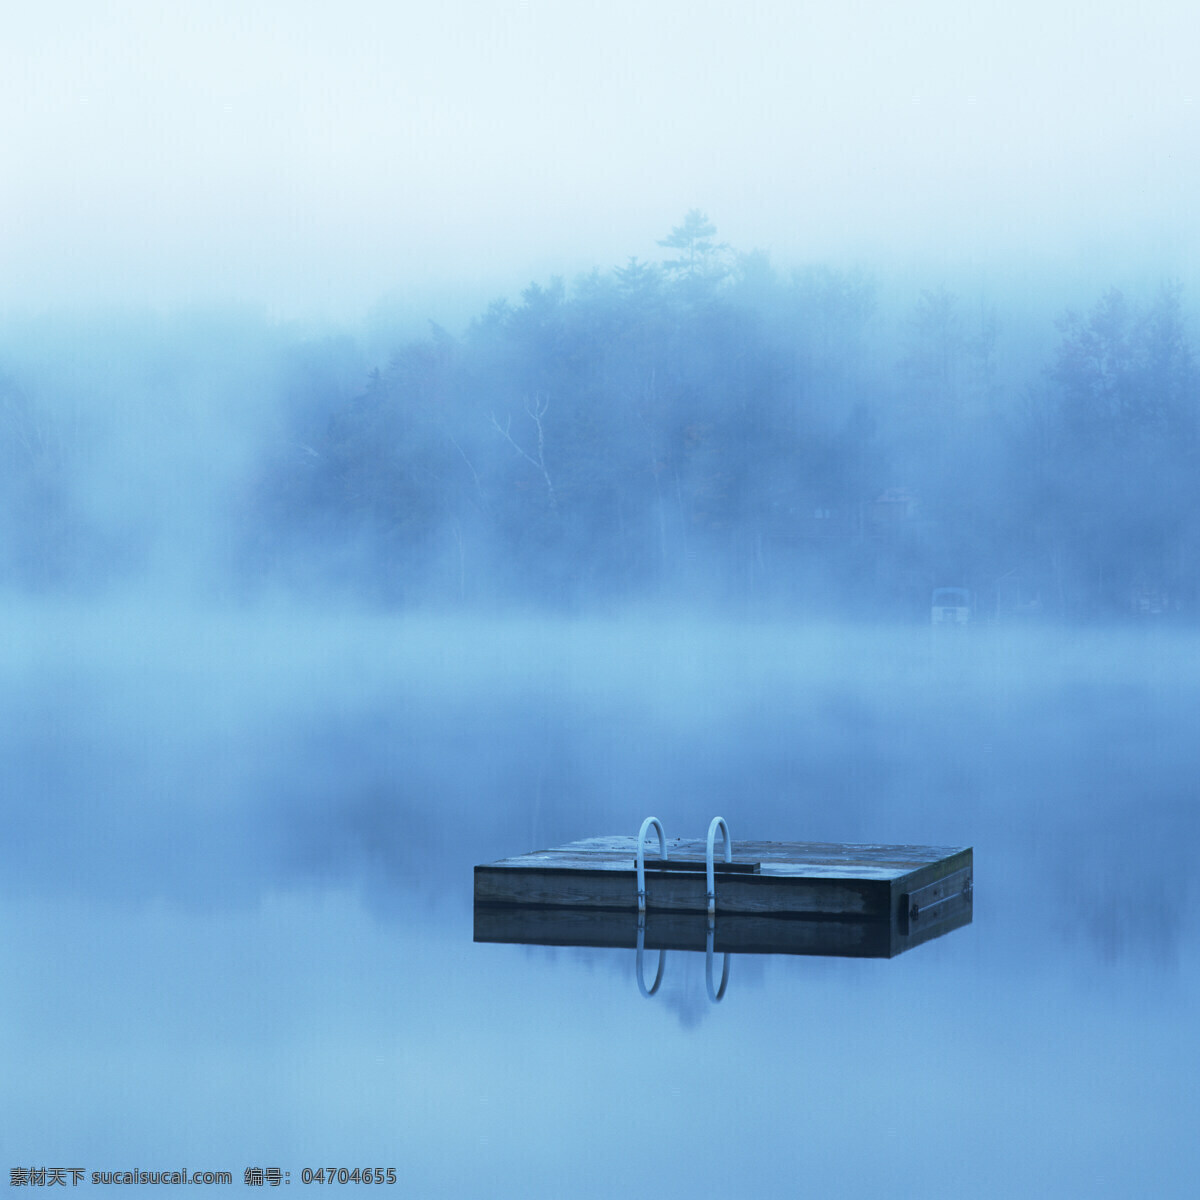 美丽湖泊风景 美丽风景 景色 美景 风景摄影 湖泊美景 海面 大雾 朦胧景色 自然风景 自然景观 蓝色